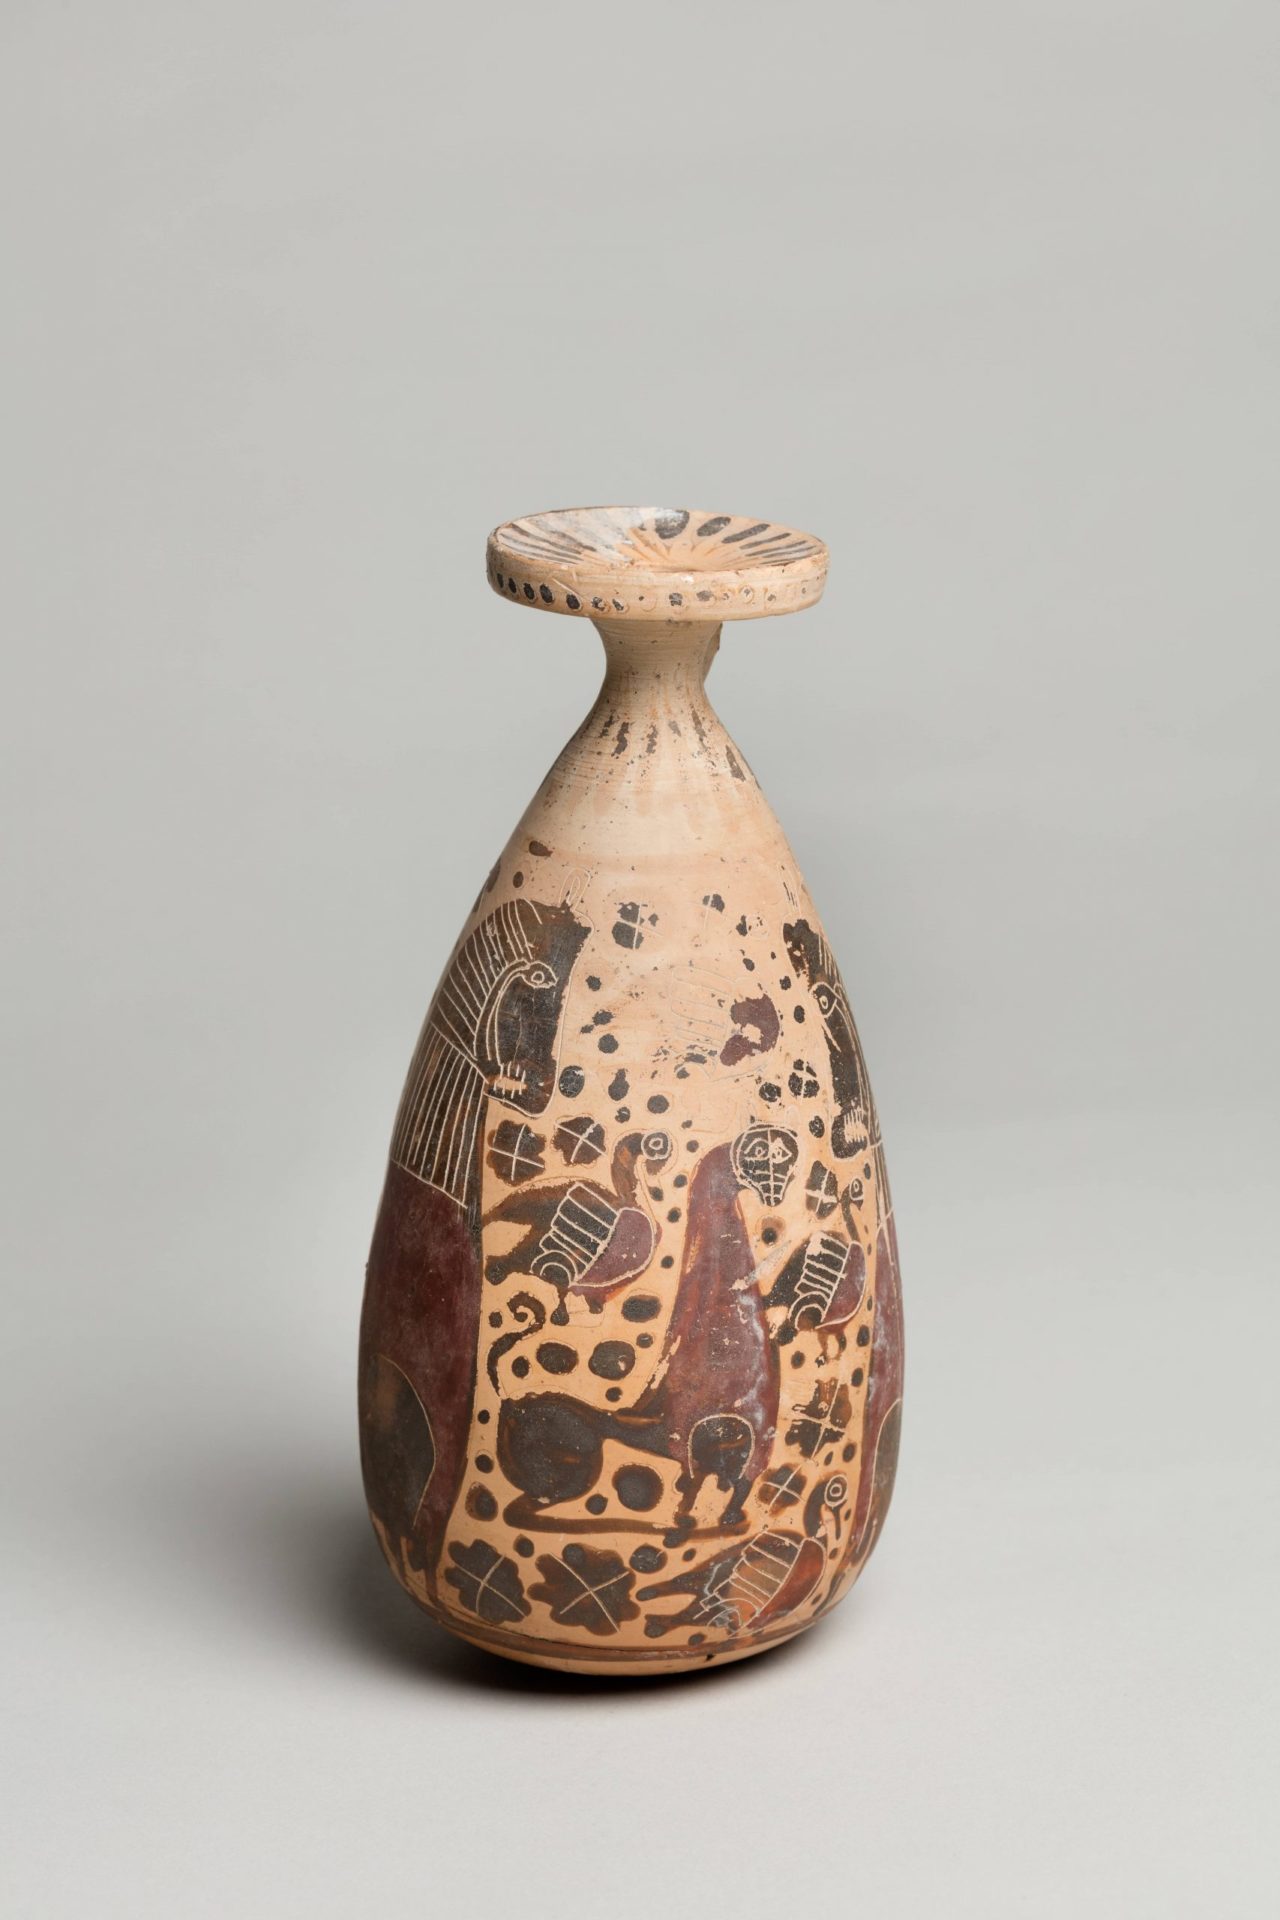 Céramique étrusque, VIIᵉ siècle av JC, Musée George Sand et de la Vallée Noire, La Châtre